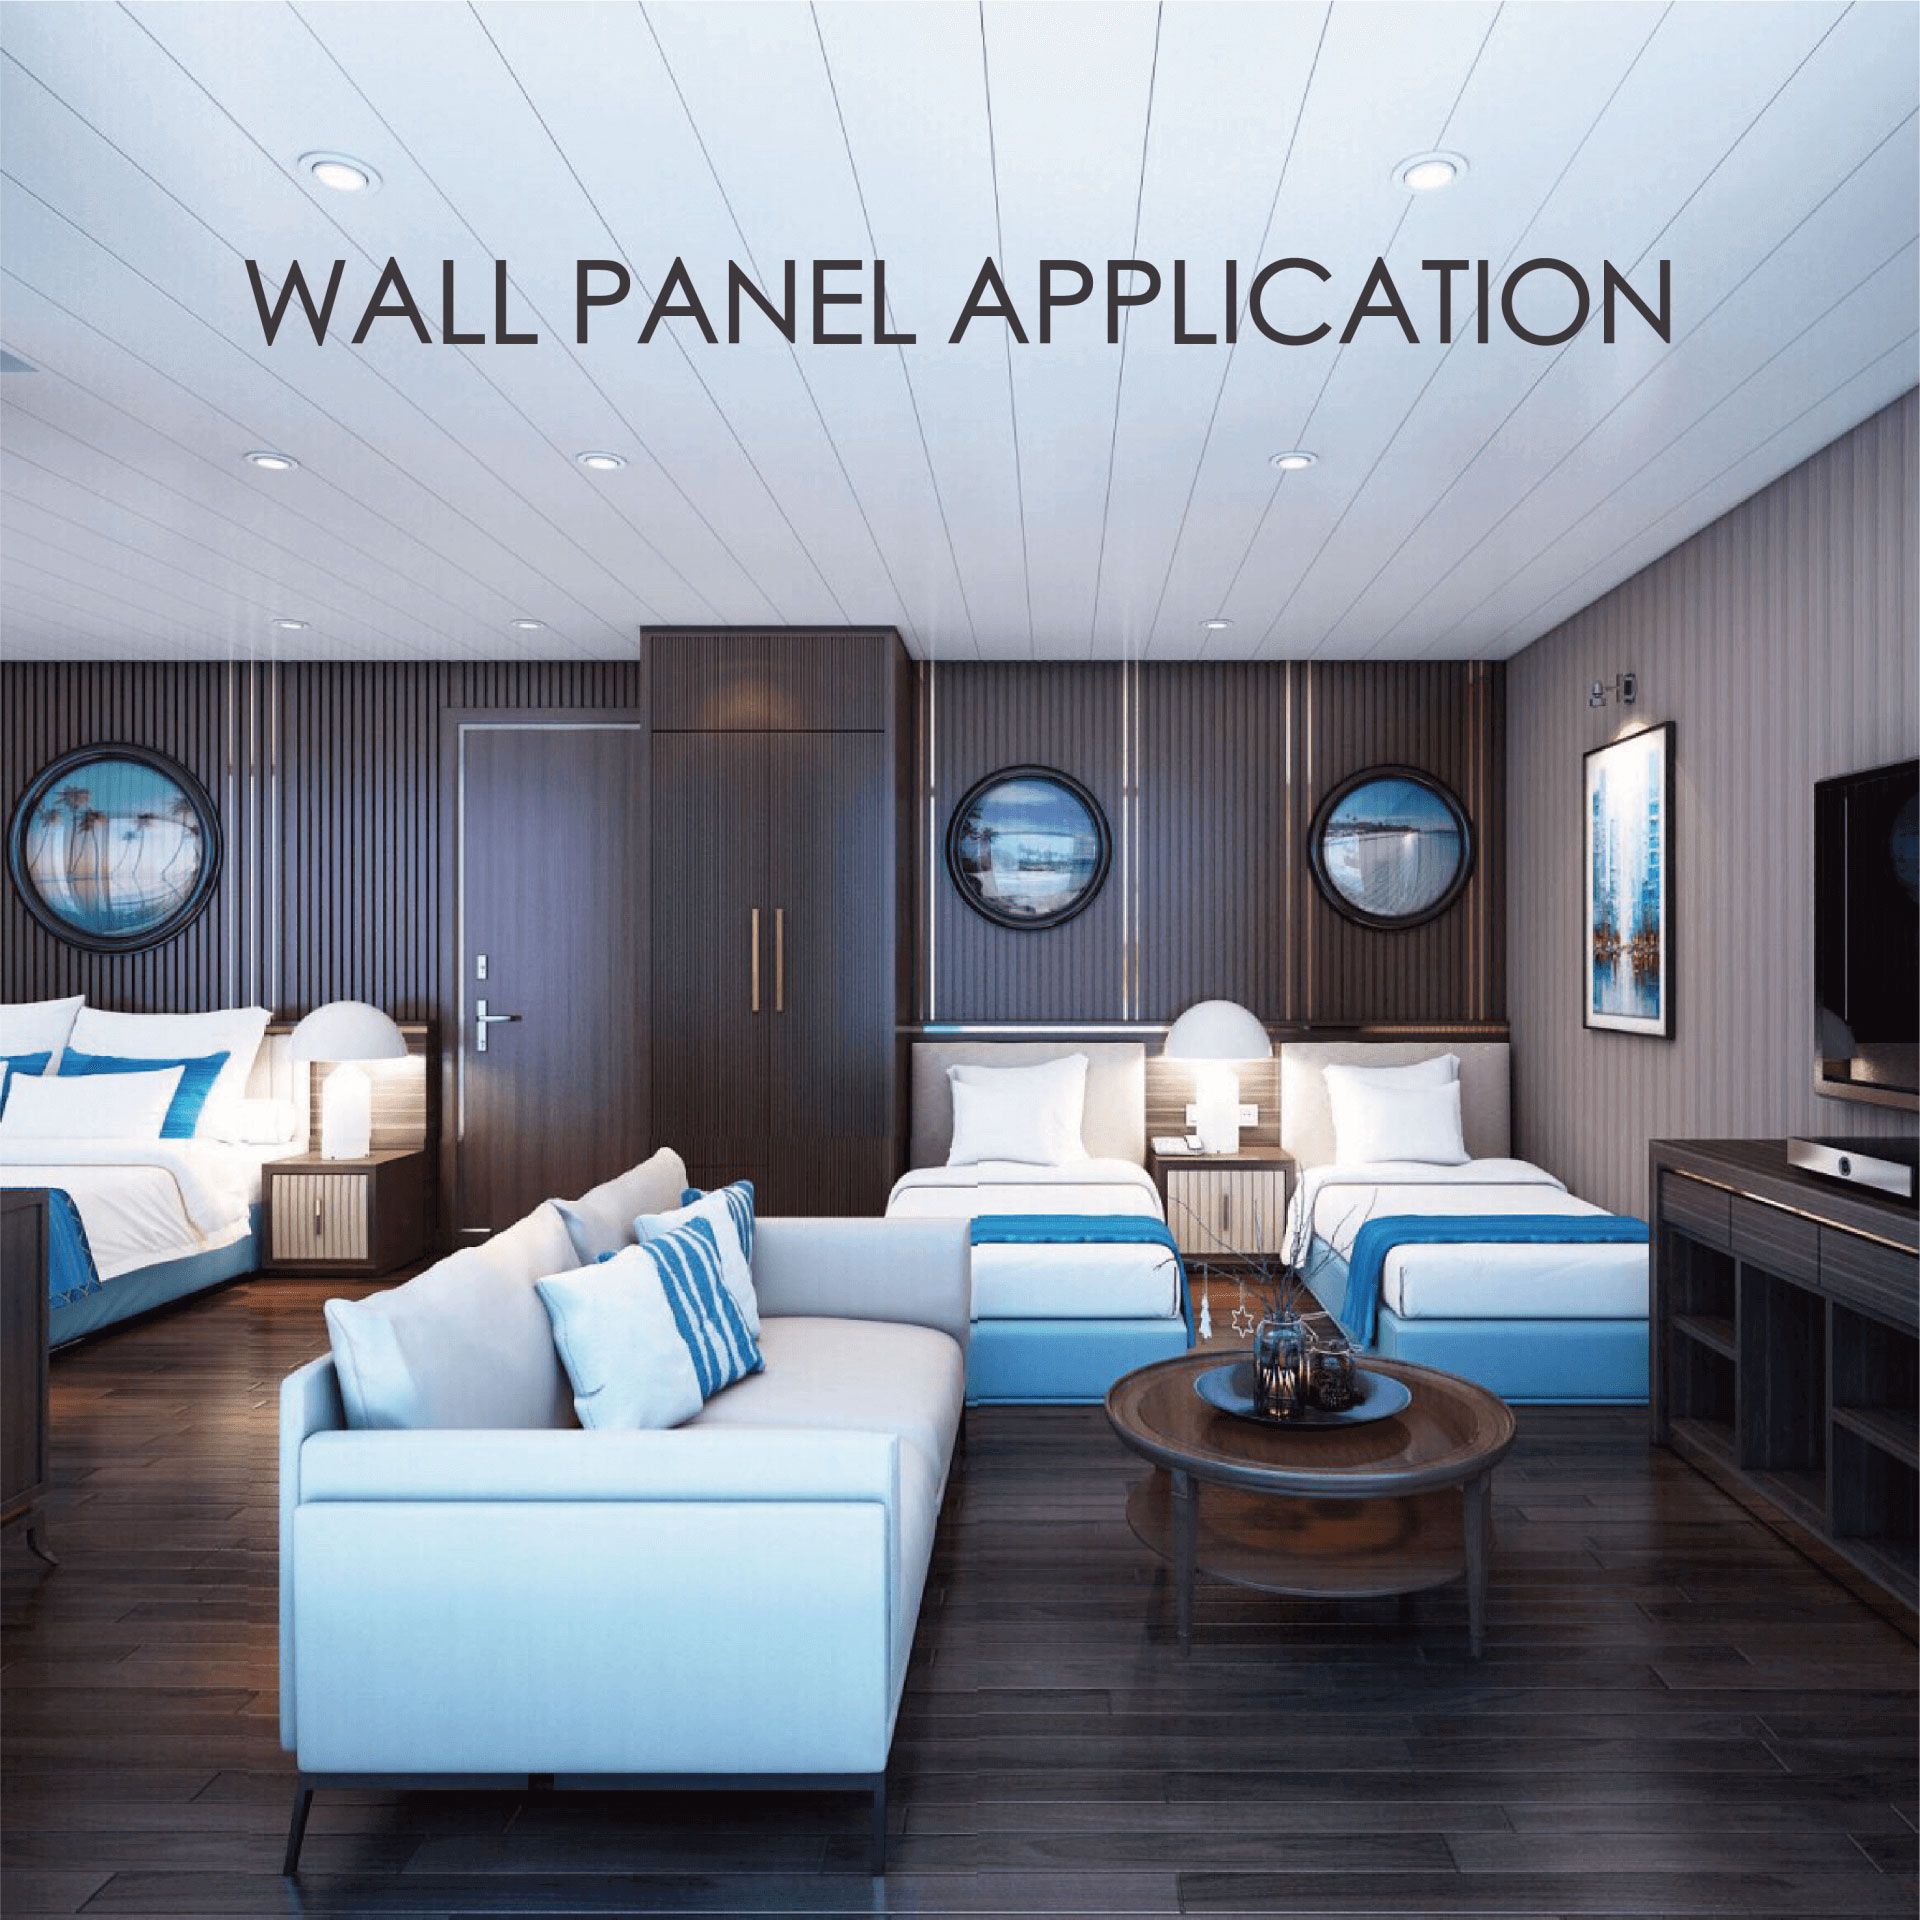 Aplikace stěnových panelů